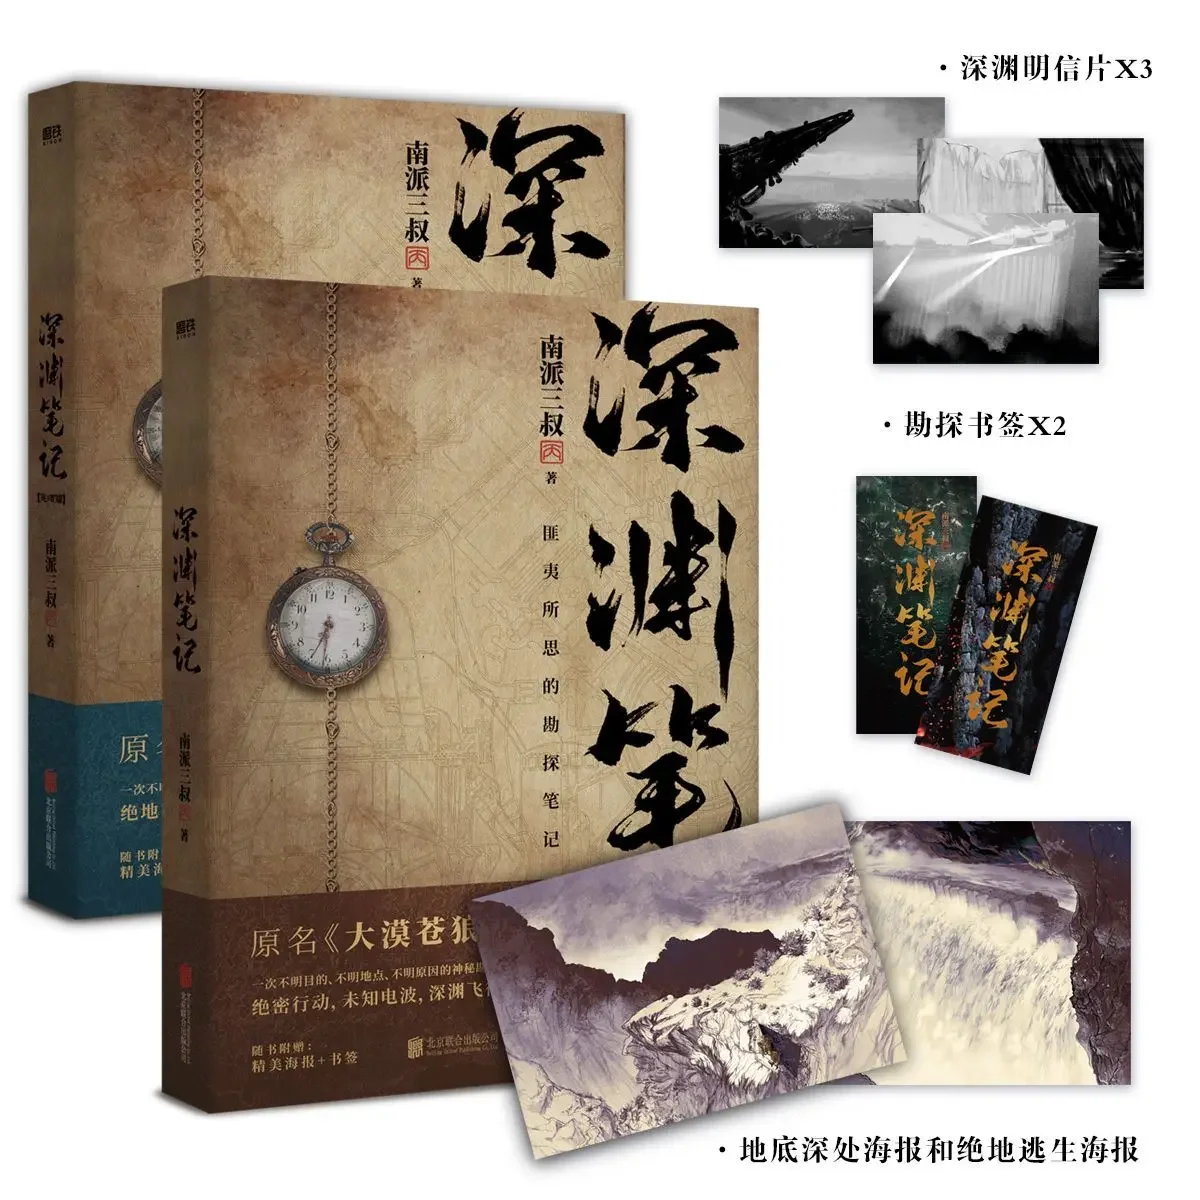 

2 Books/Set Shen Yuan Bi Ji Original Novel Wu Xie Zhang Qiling Time Raiders Series Detective Suspense Fiction Book Desert Wolf